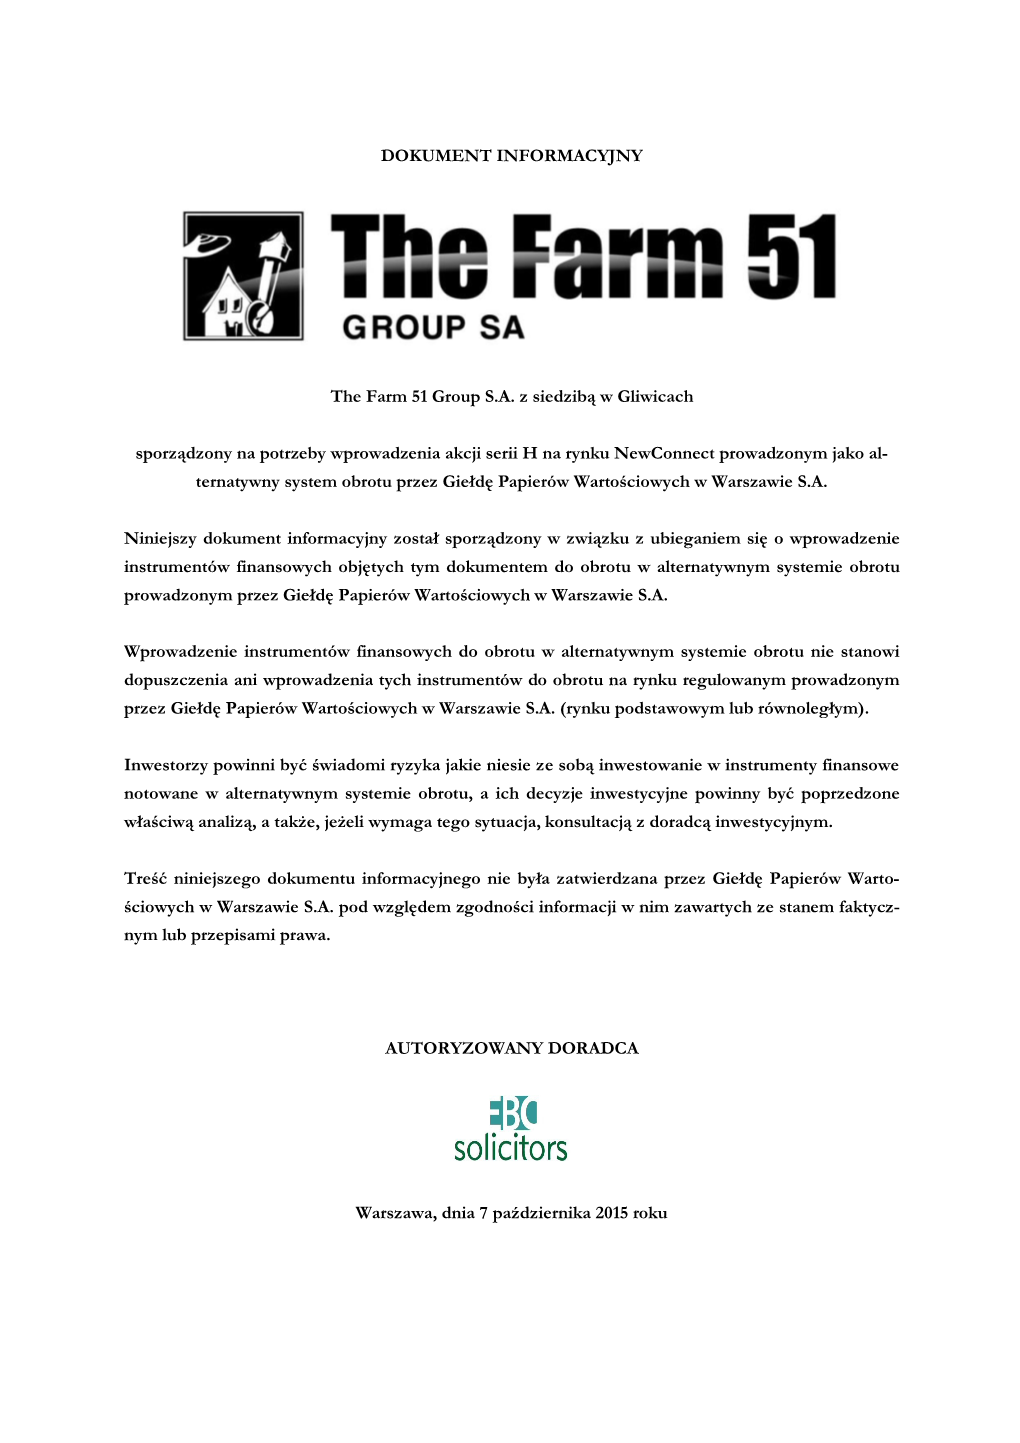 The Farm 51 Group S.A